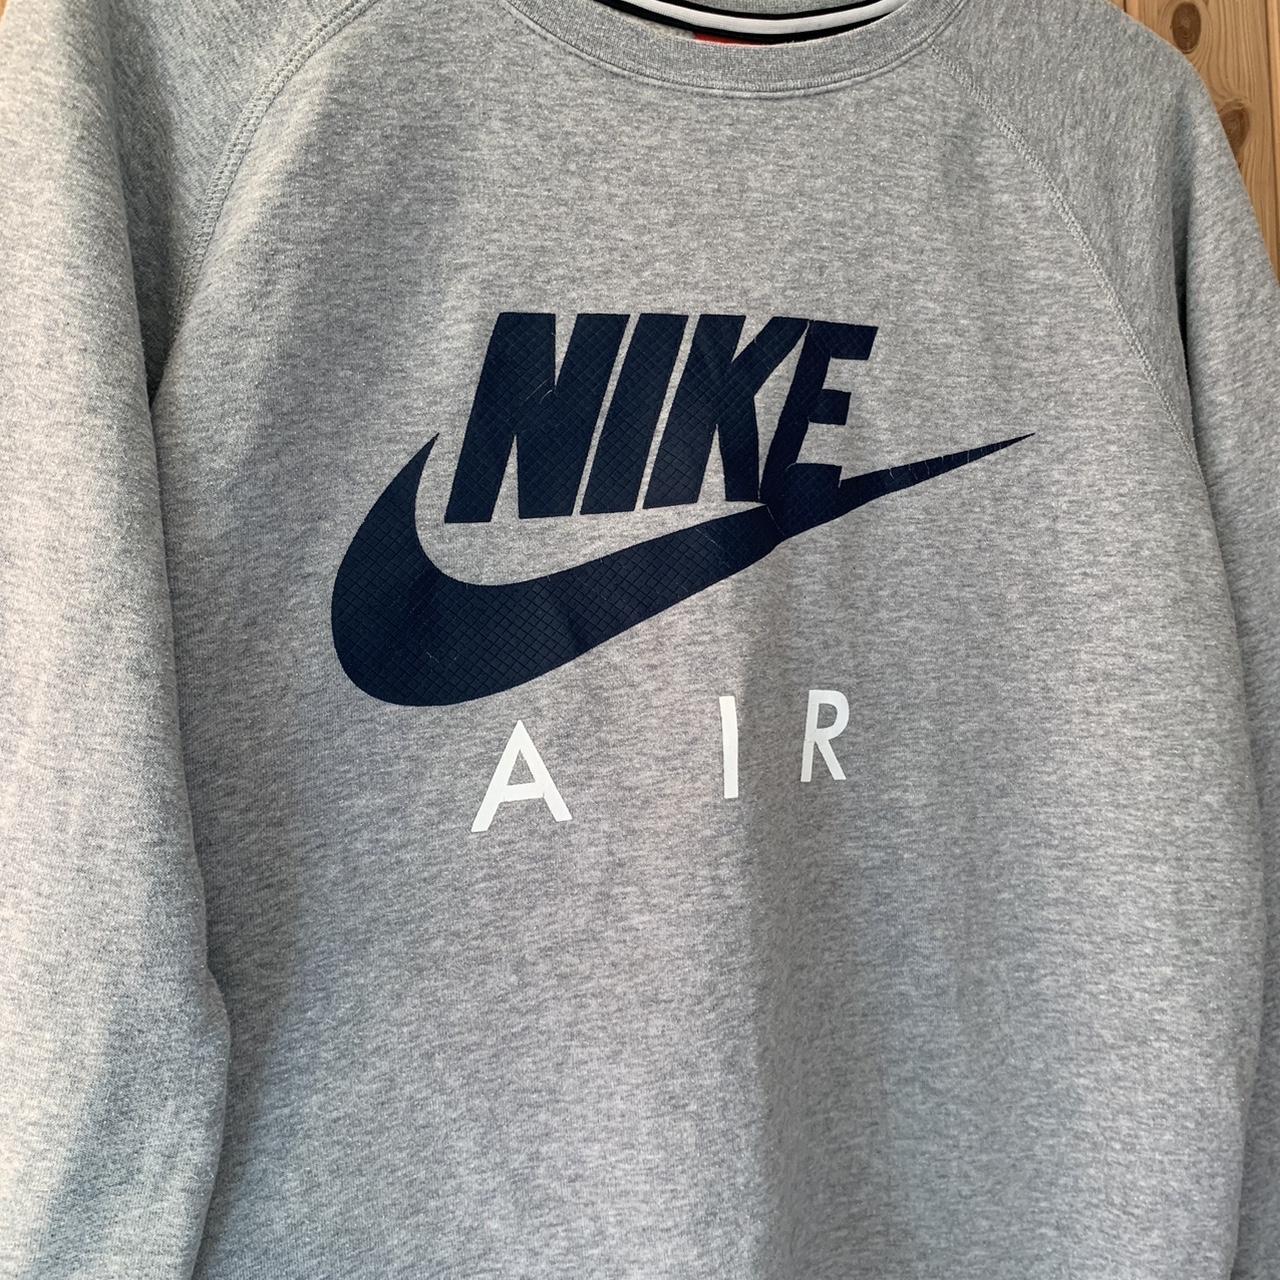 Medium Vintage Nike Air Grey Crewneck Sweatshirt... - Depop